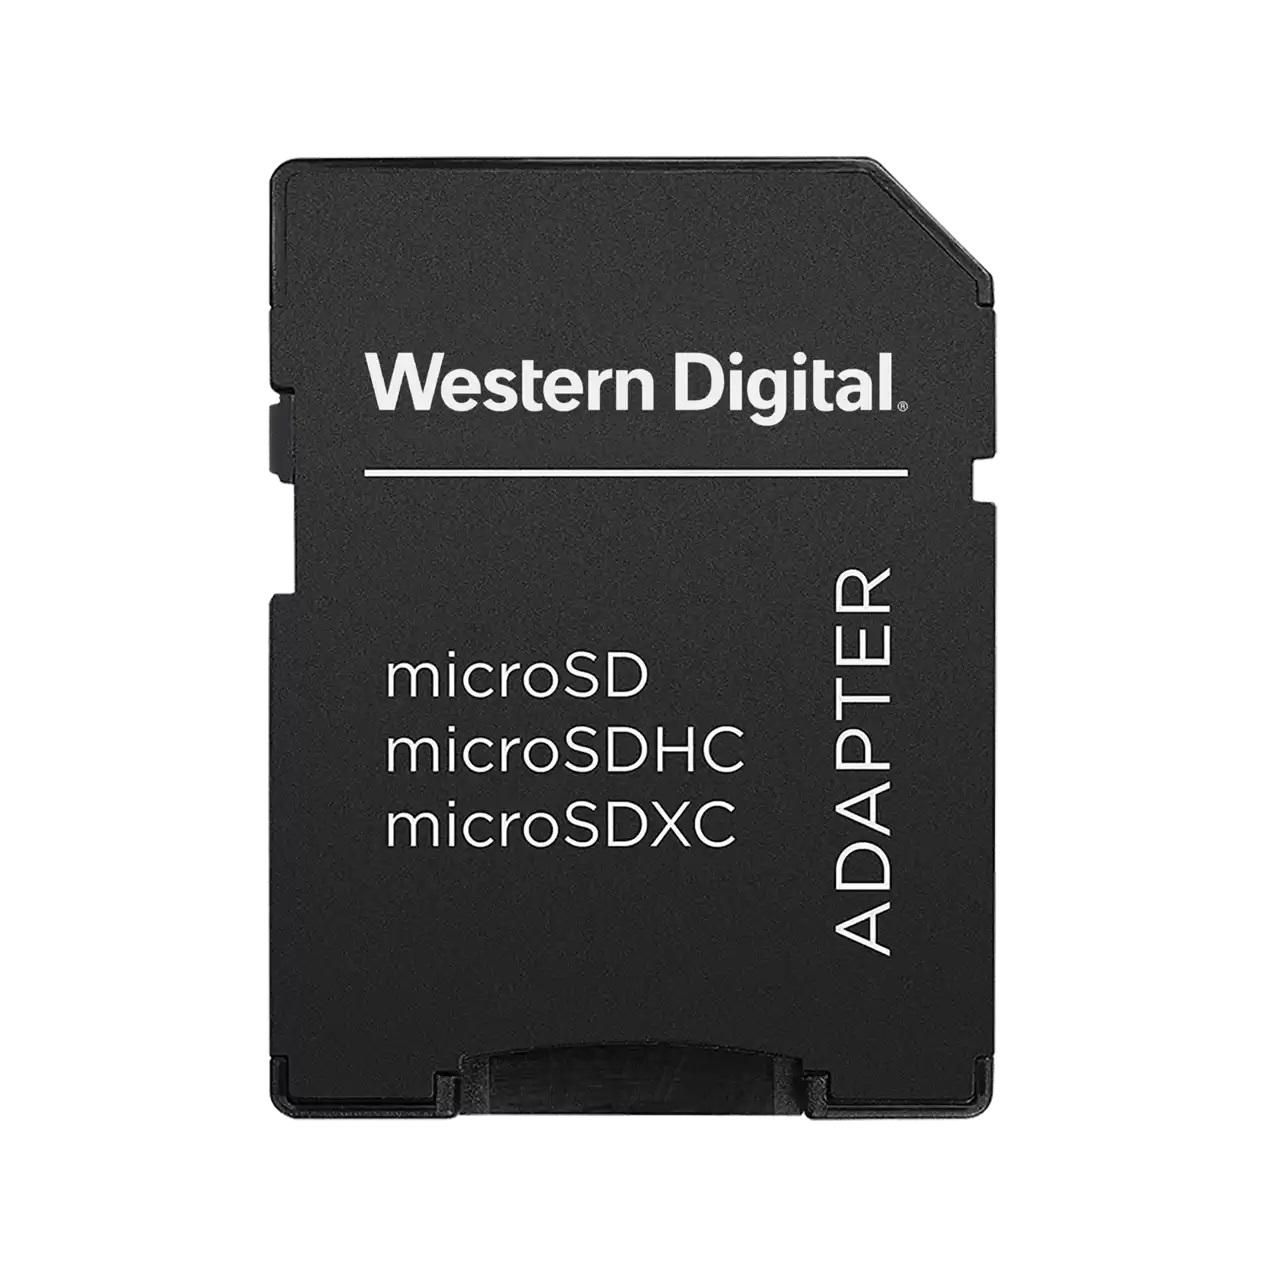 Western-Digital WDDSDADP01 W128274808 SimMemory Card Adapter Flash 